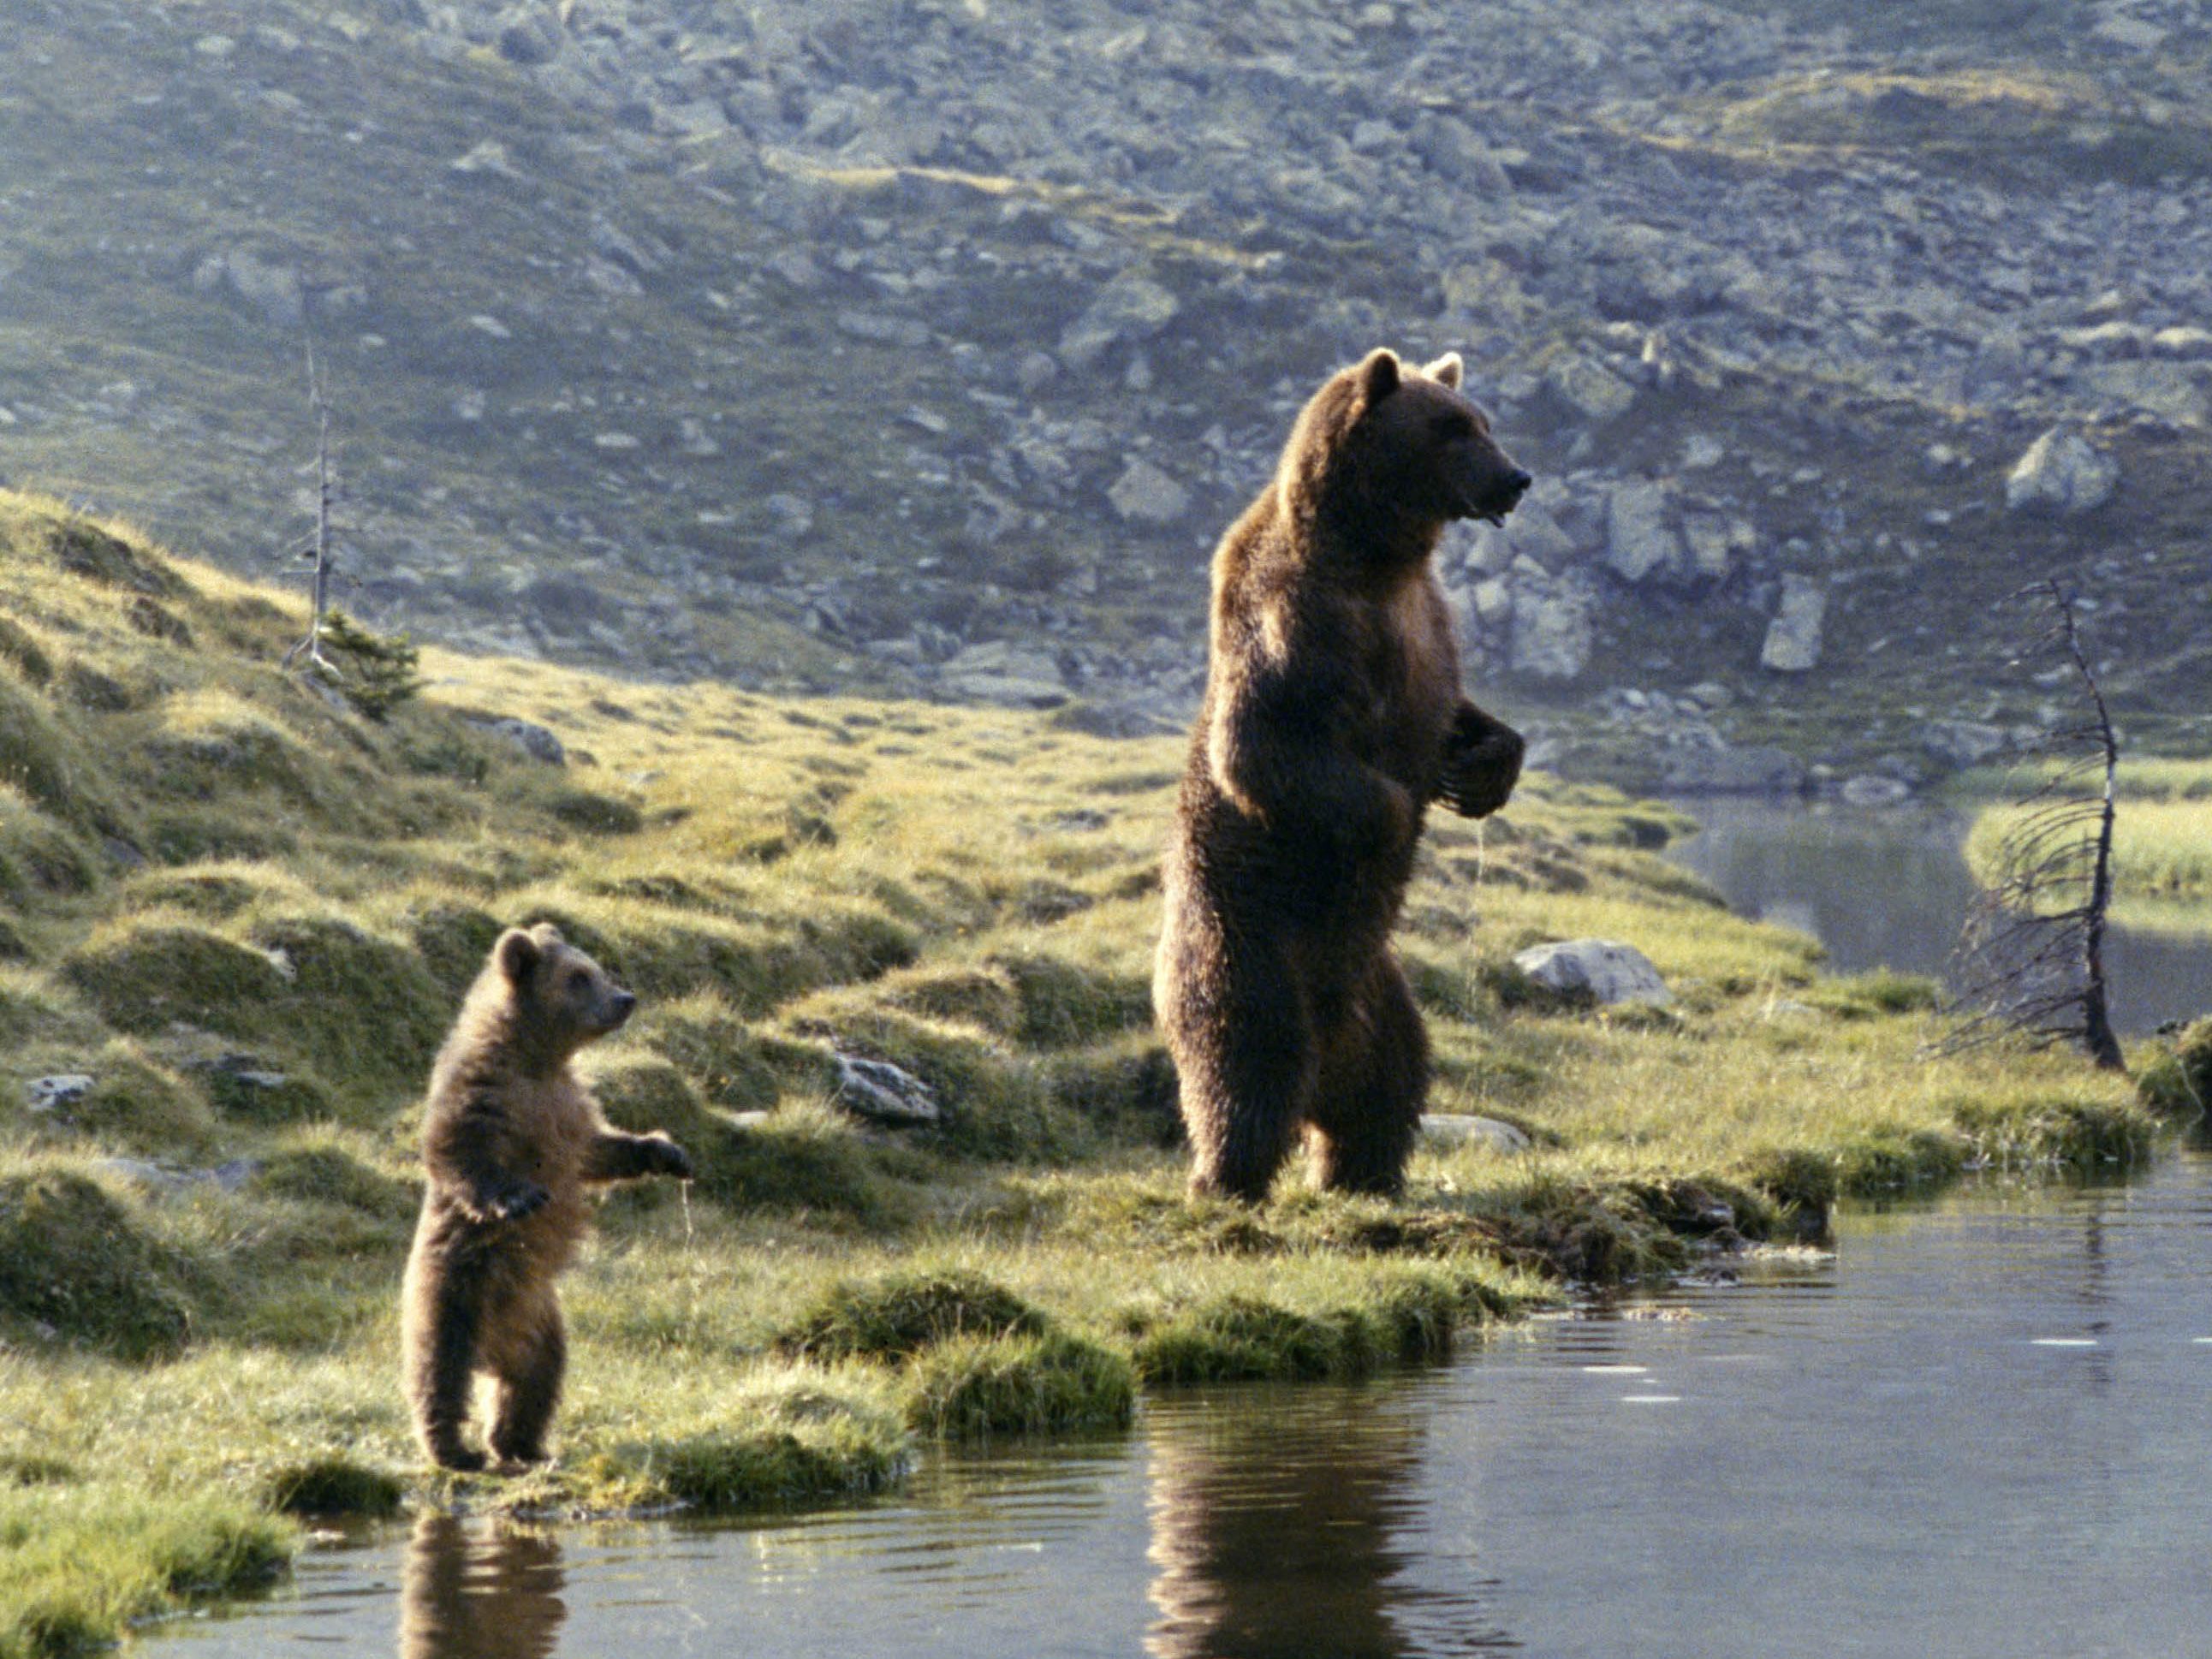 L'Ours mardi 15 septembre sur France 4 : découvrez l'incroyable filmographie de l'ours Bart